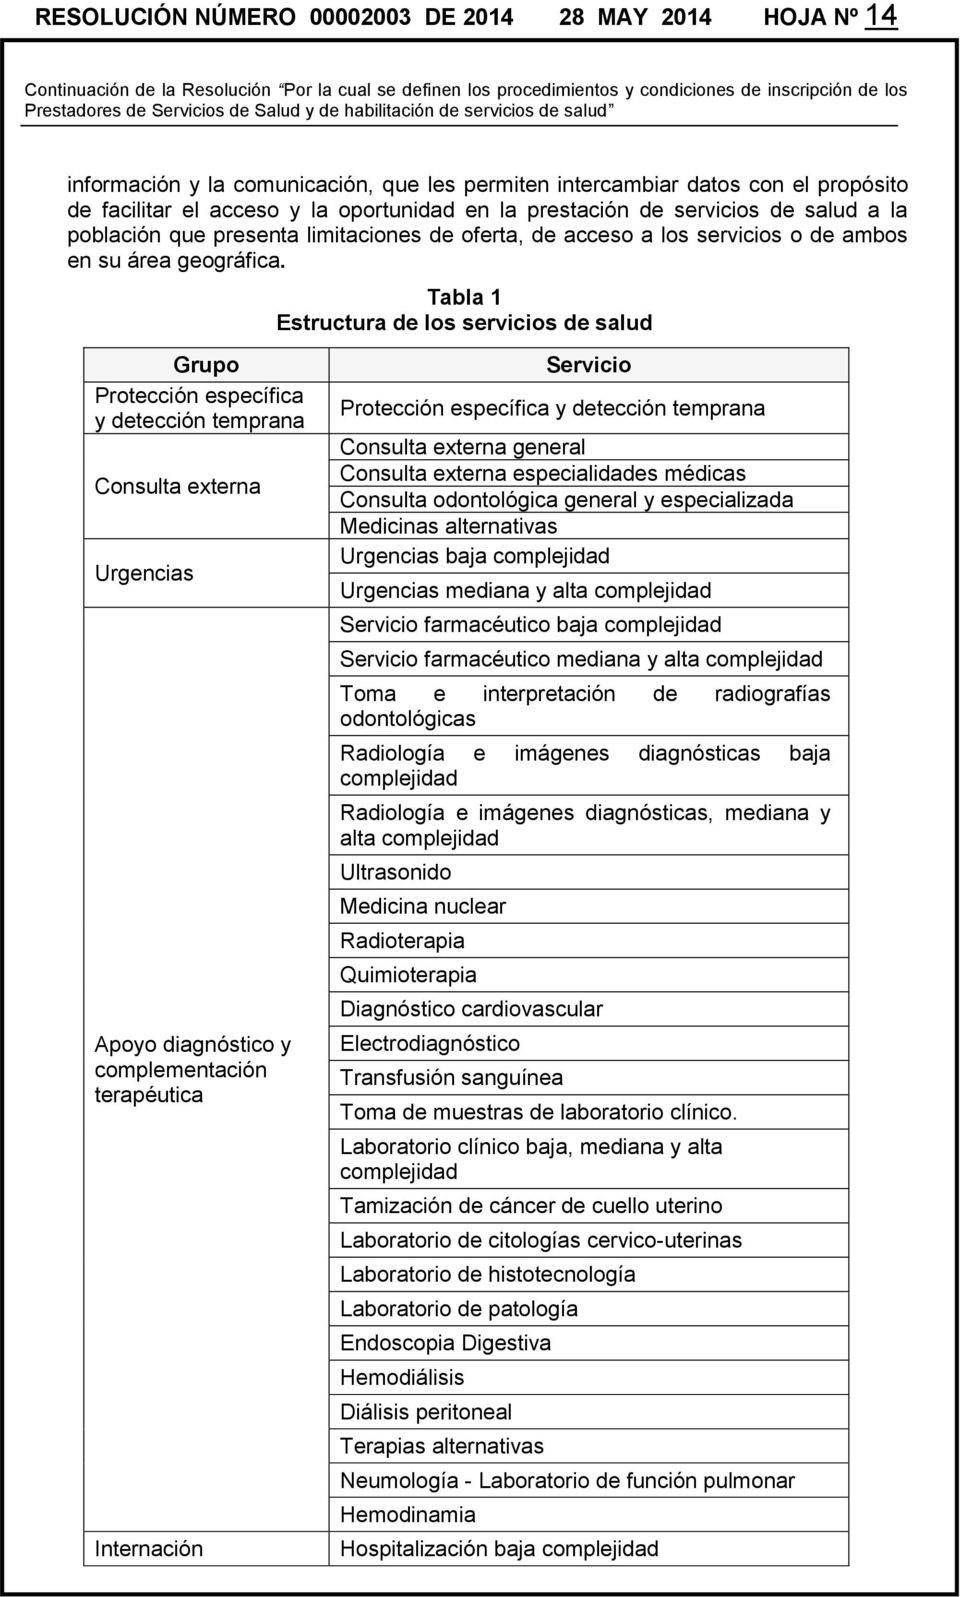 Tabla 1 Estructura de los servicios de salud Grupo Protección específica y detección temprana Consulta externa Urgencias Apoyo diagnóstico y complementación terapéutica Internación Servicio